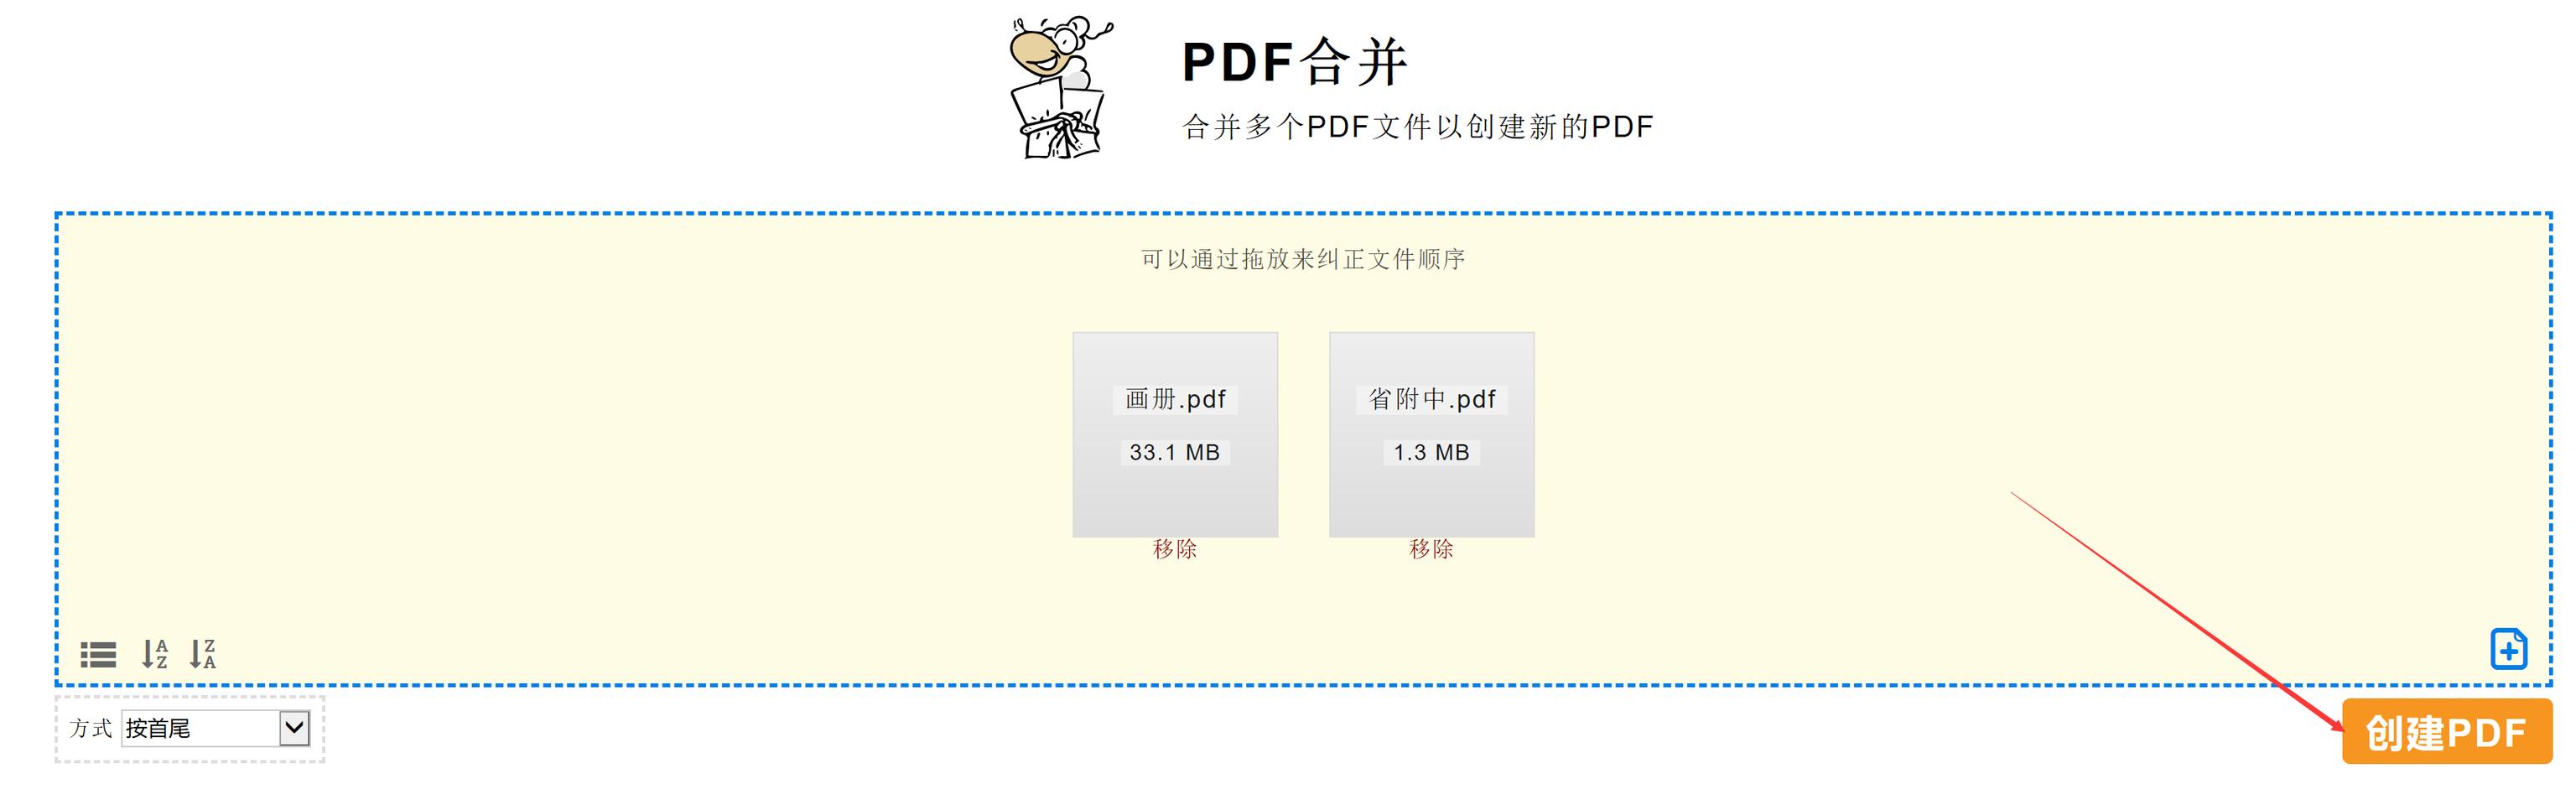 pdf软件哪个好用？ PDF哪一款才是最好用的